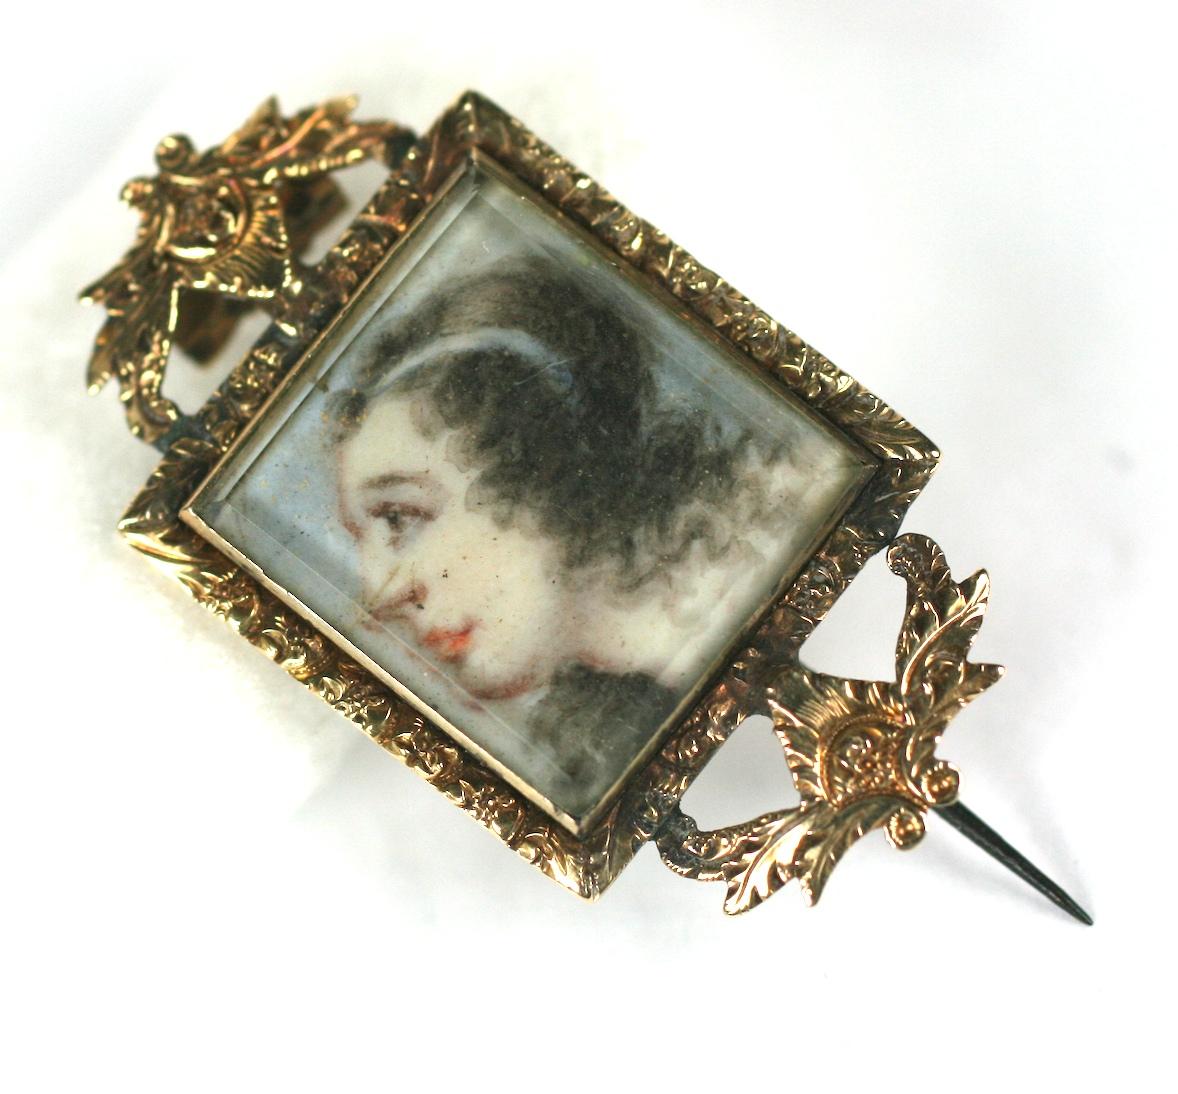 Rare broche géorgienne en forme d'œil d'amoureux datant de la fin des années 1700. Portrait miniature peint d'une jeune femme, regardant vers le haut avec un ruban blanc retenant ses cheveux, avec un œil d'amant peint à l'avers, tous deux pris sous